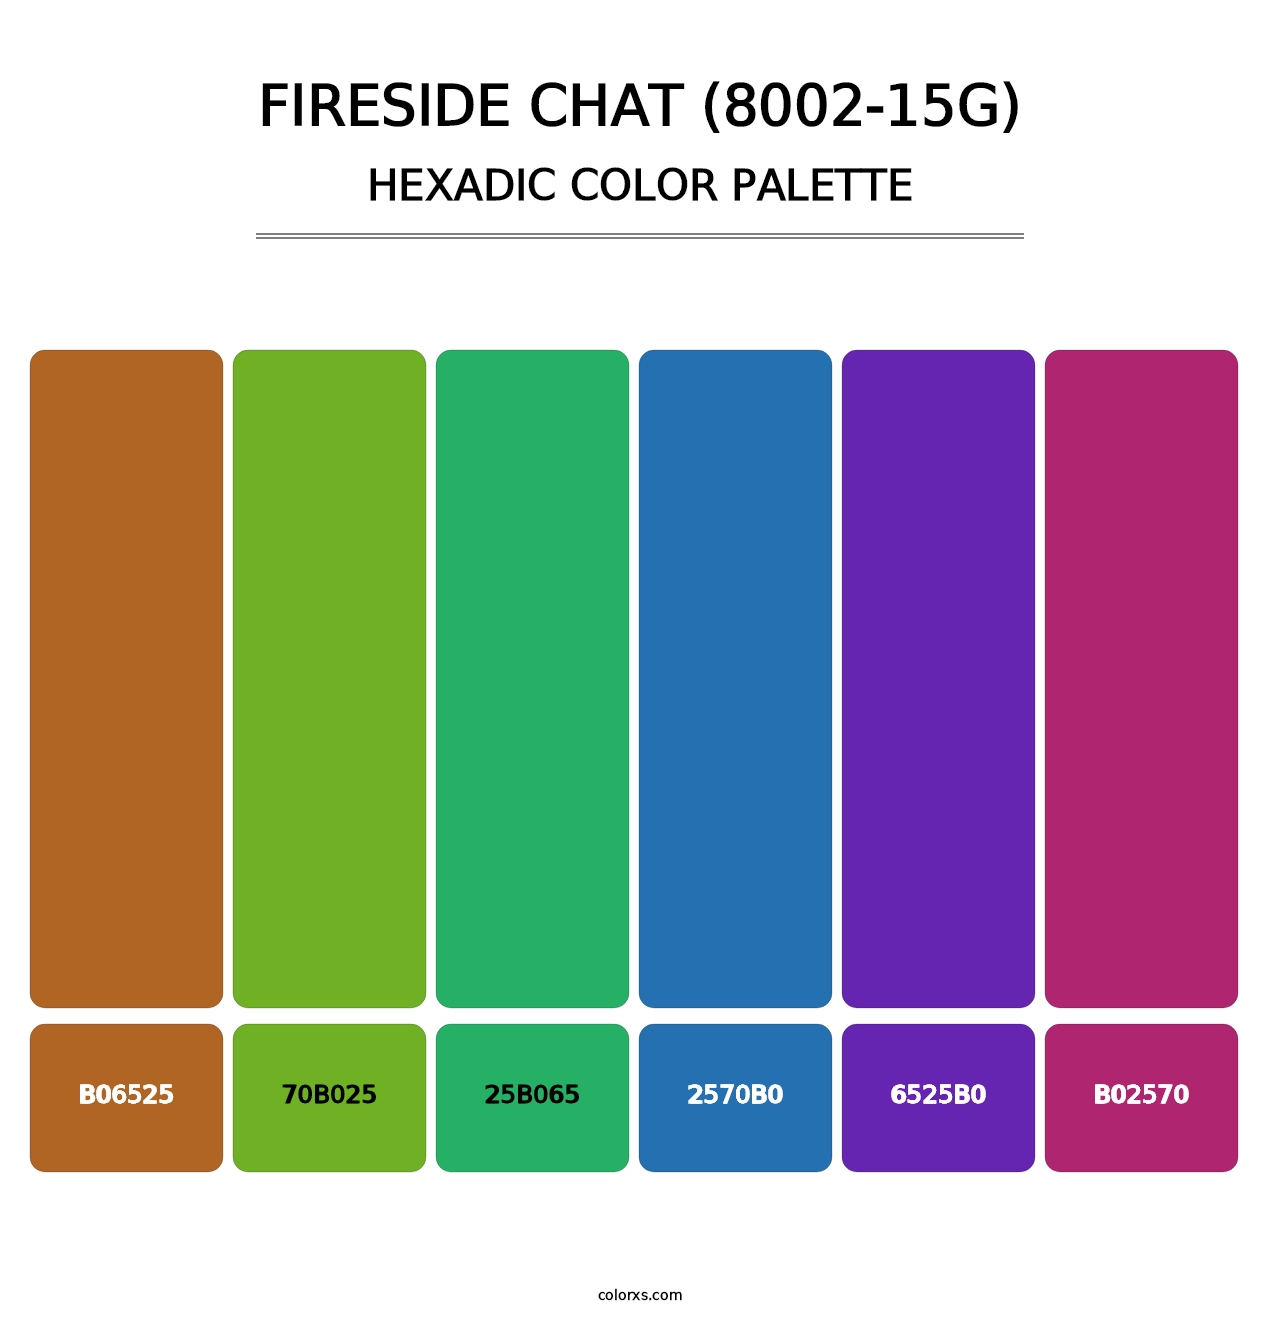 Fireside Chat (8002-15G) - Hexadic Color Palette